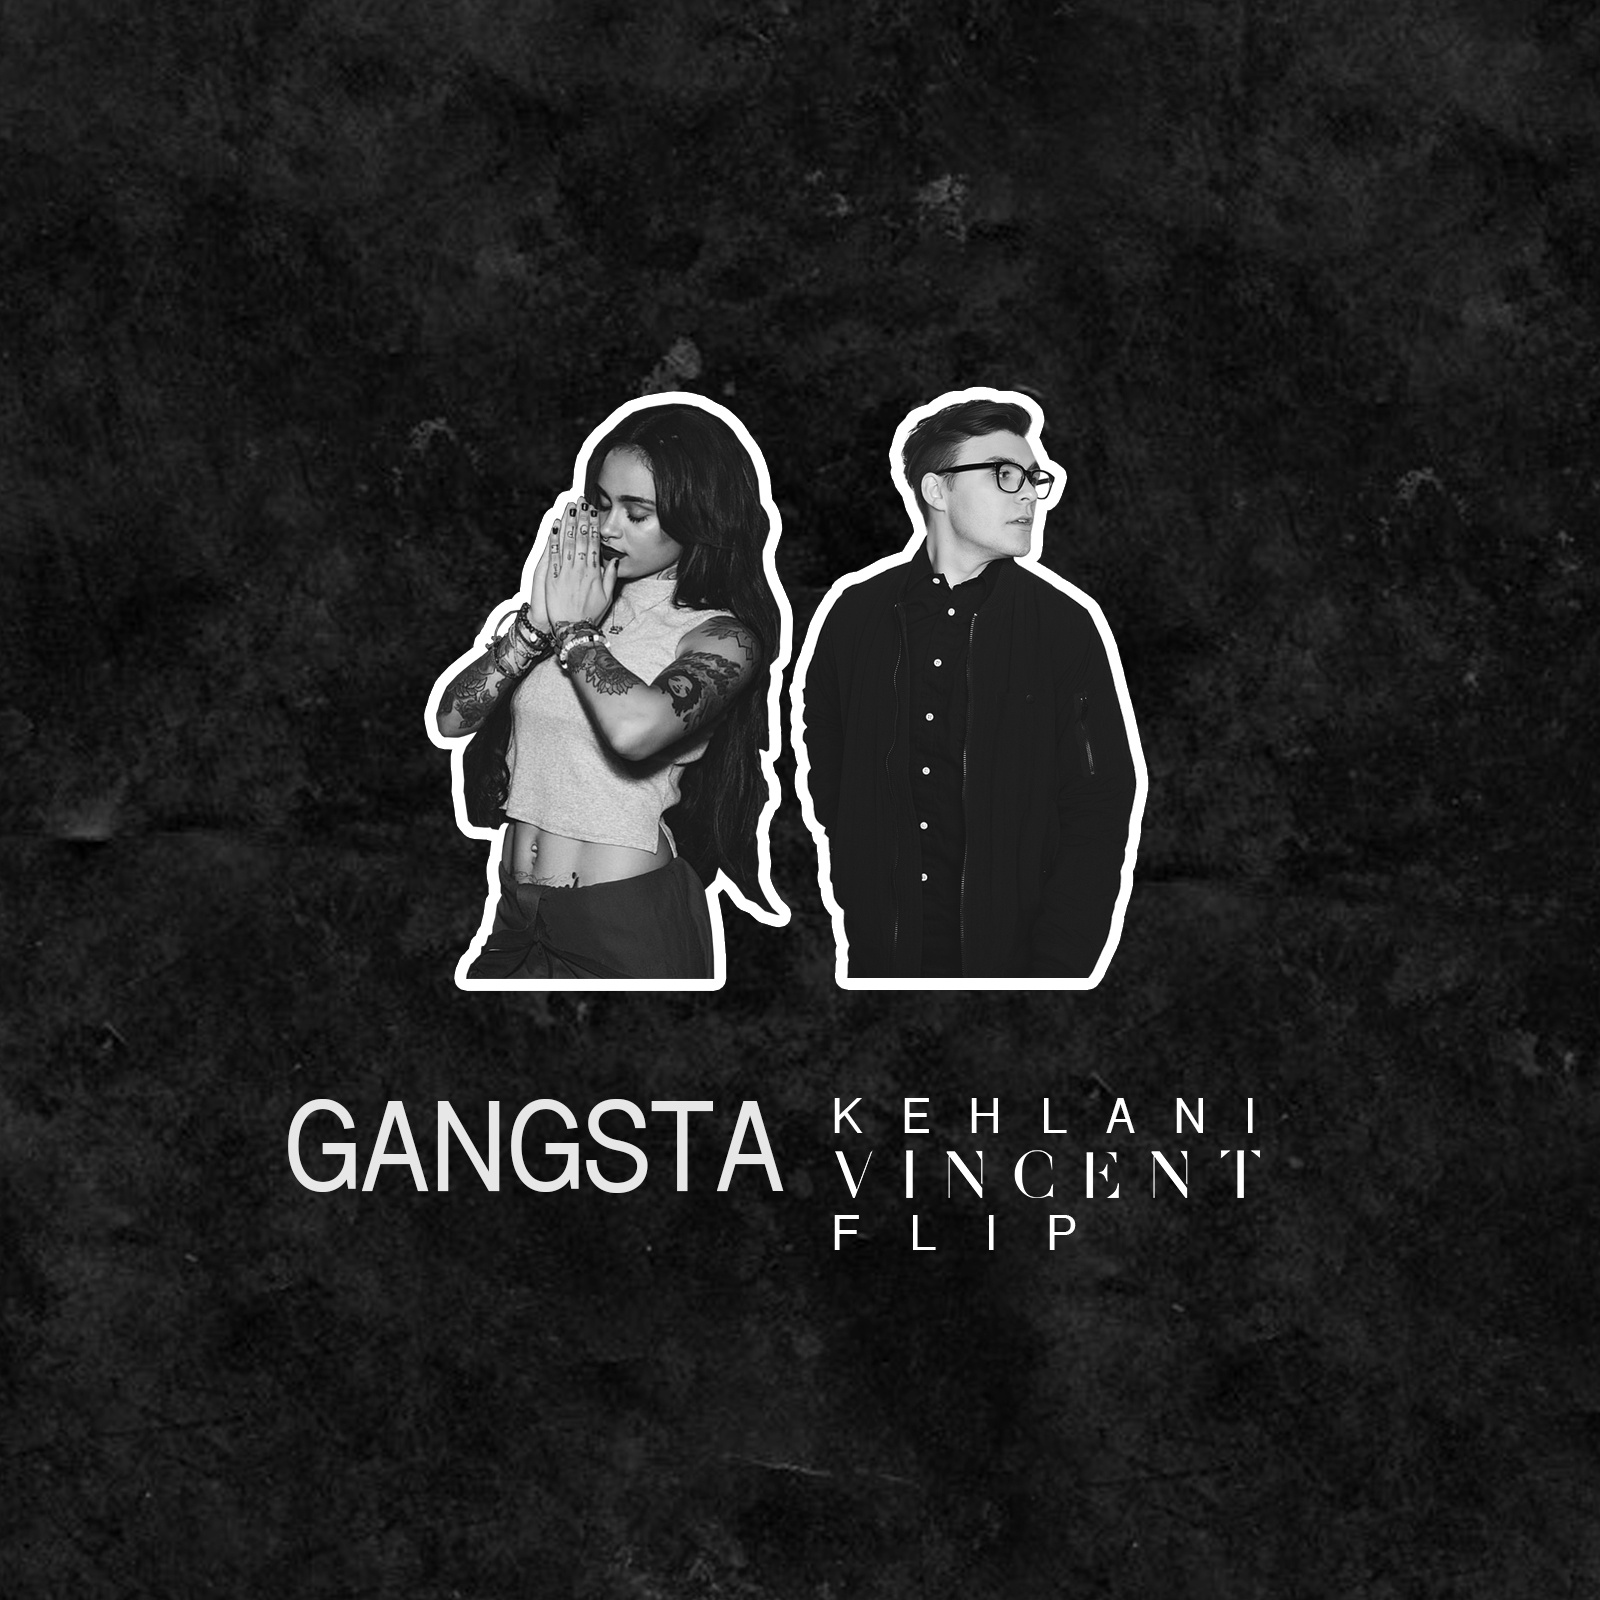 Gangsta (Vincent Flip)